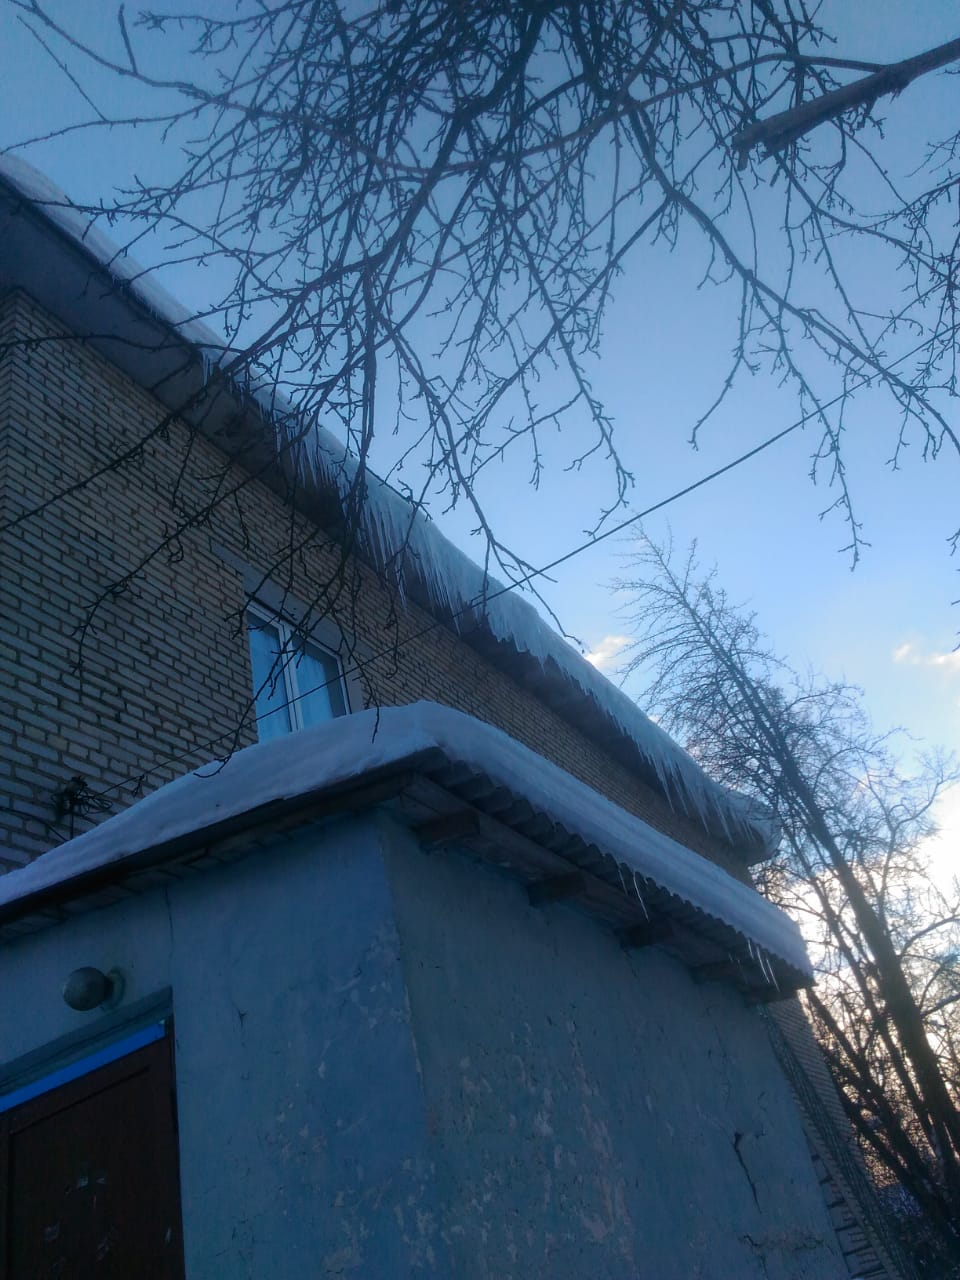 очистка крыши от снега